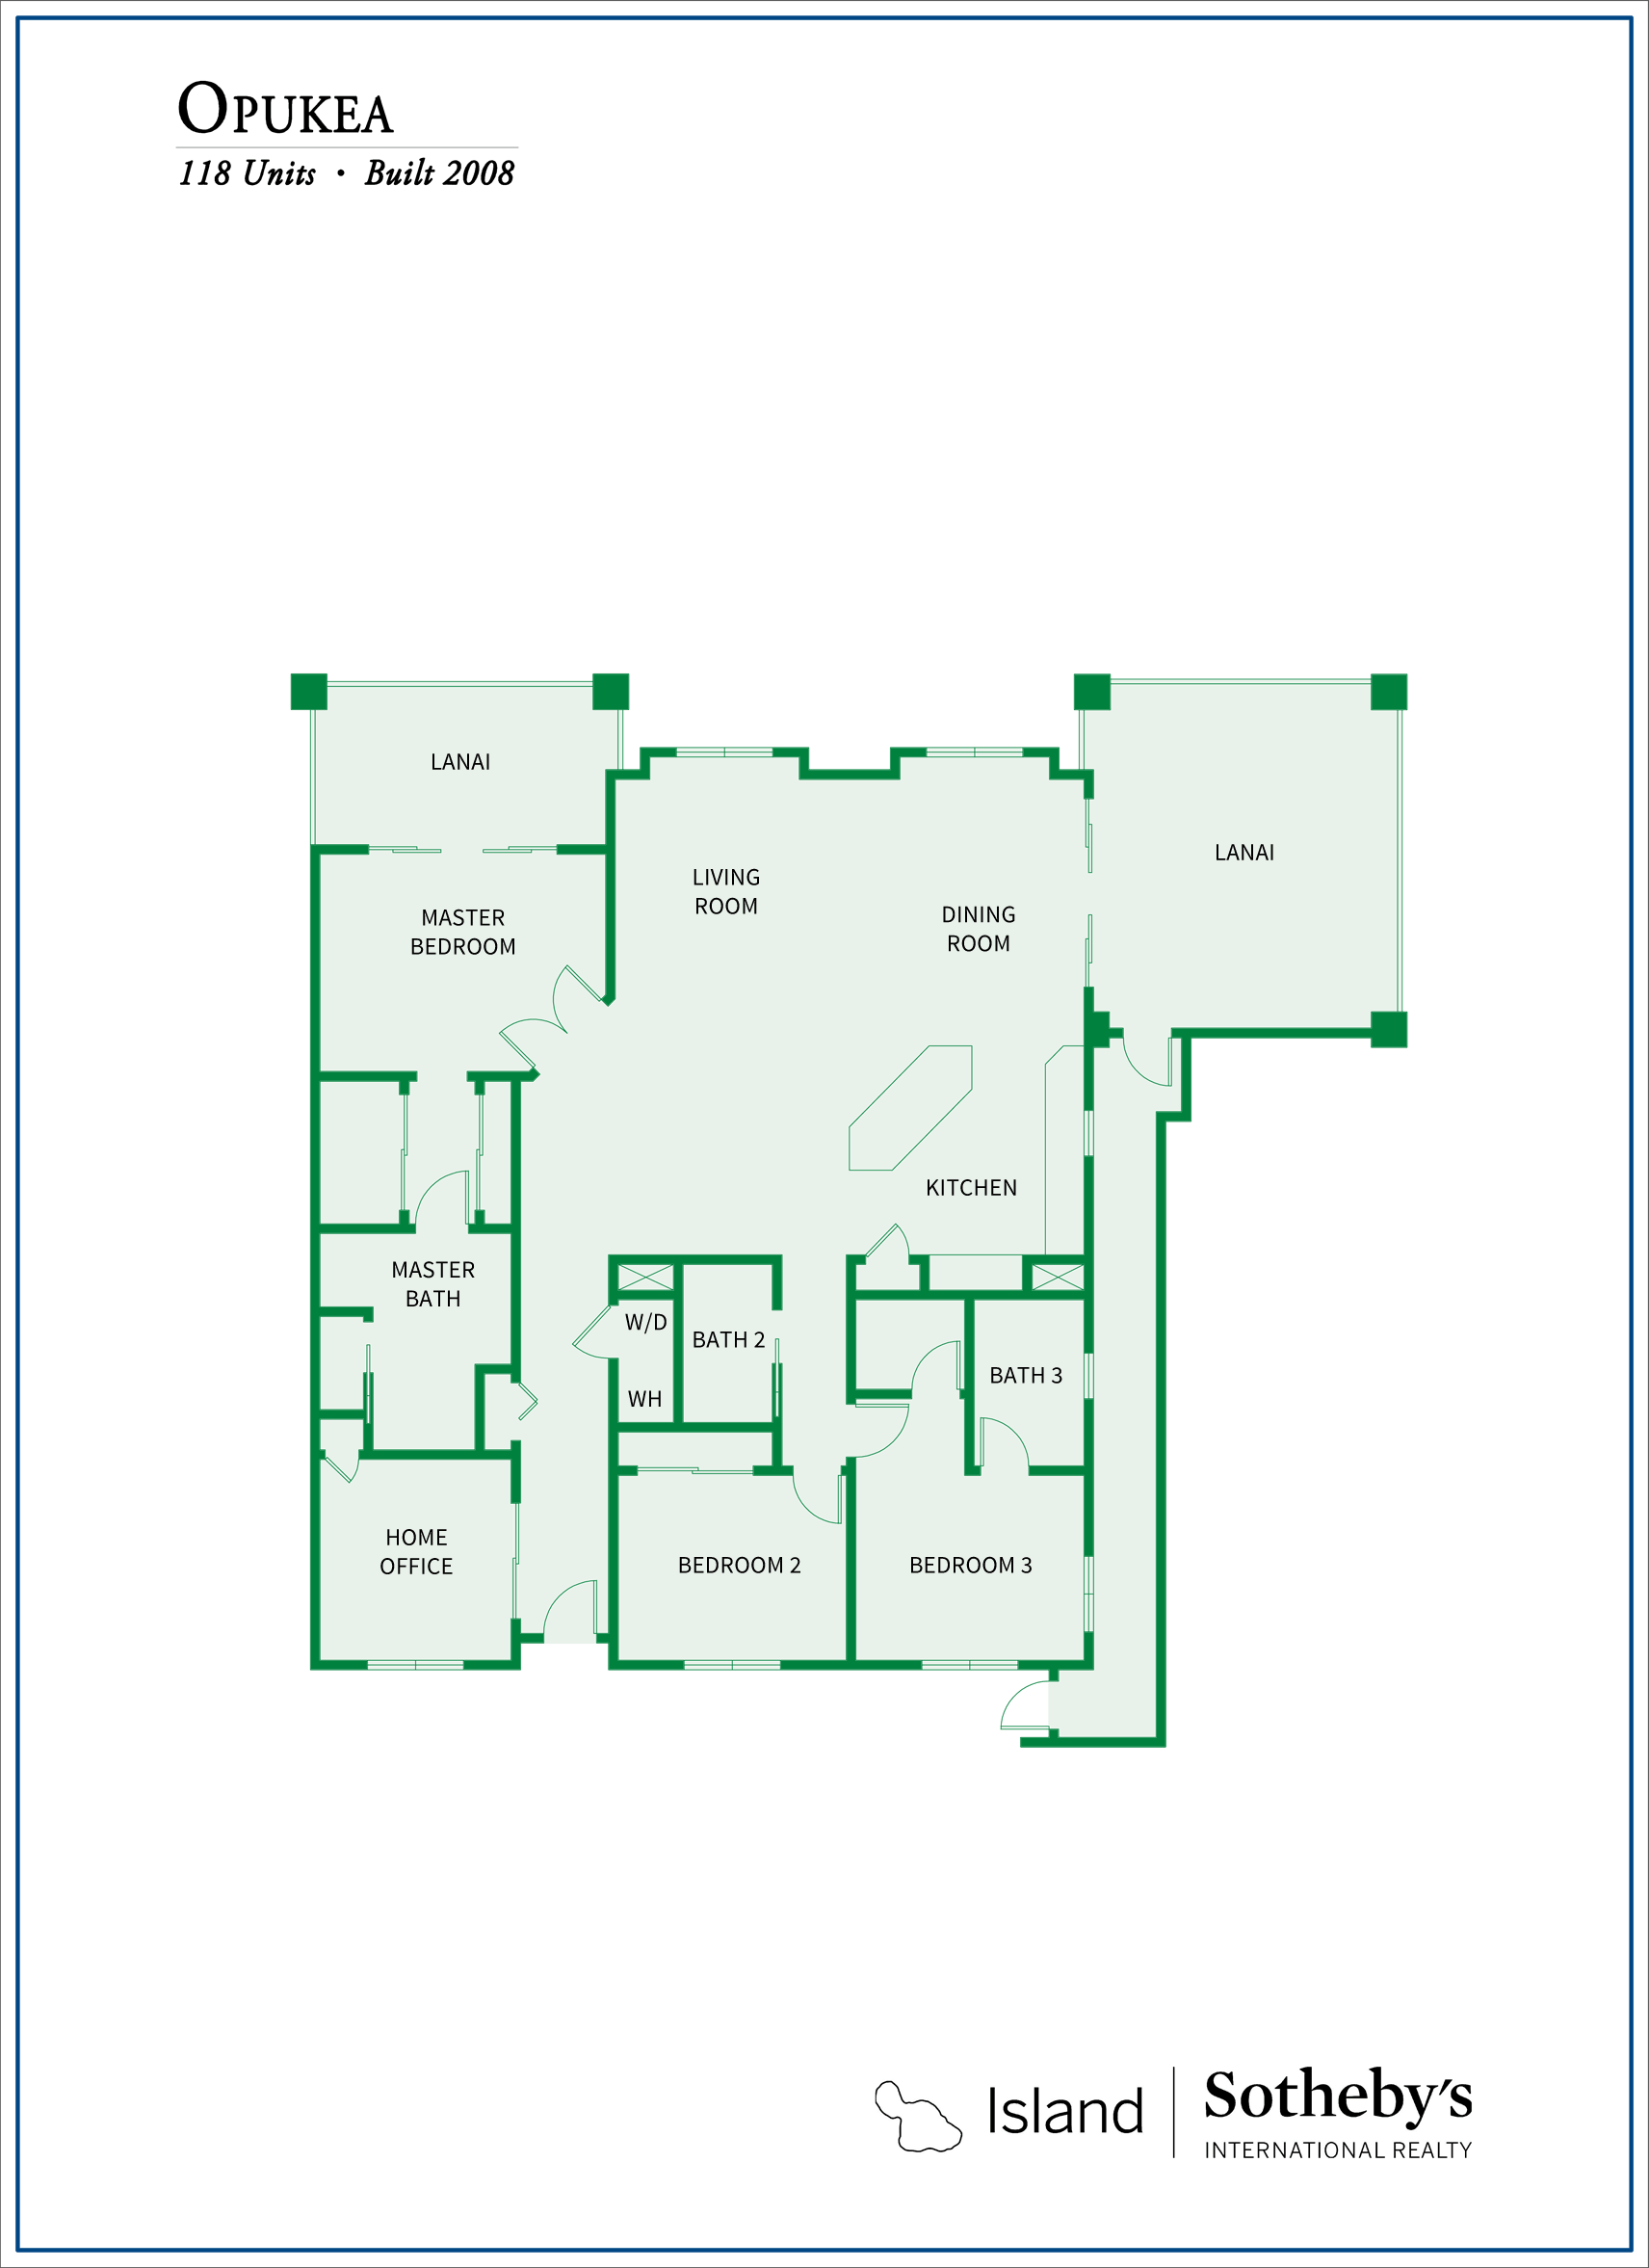 floor plan for opukea lahaina